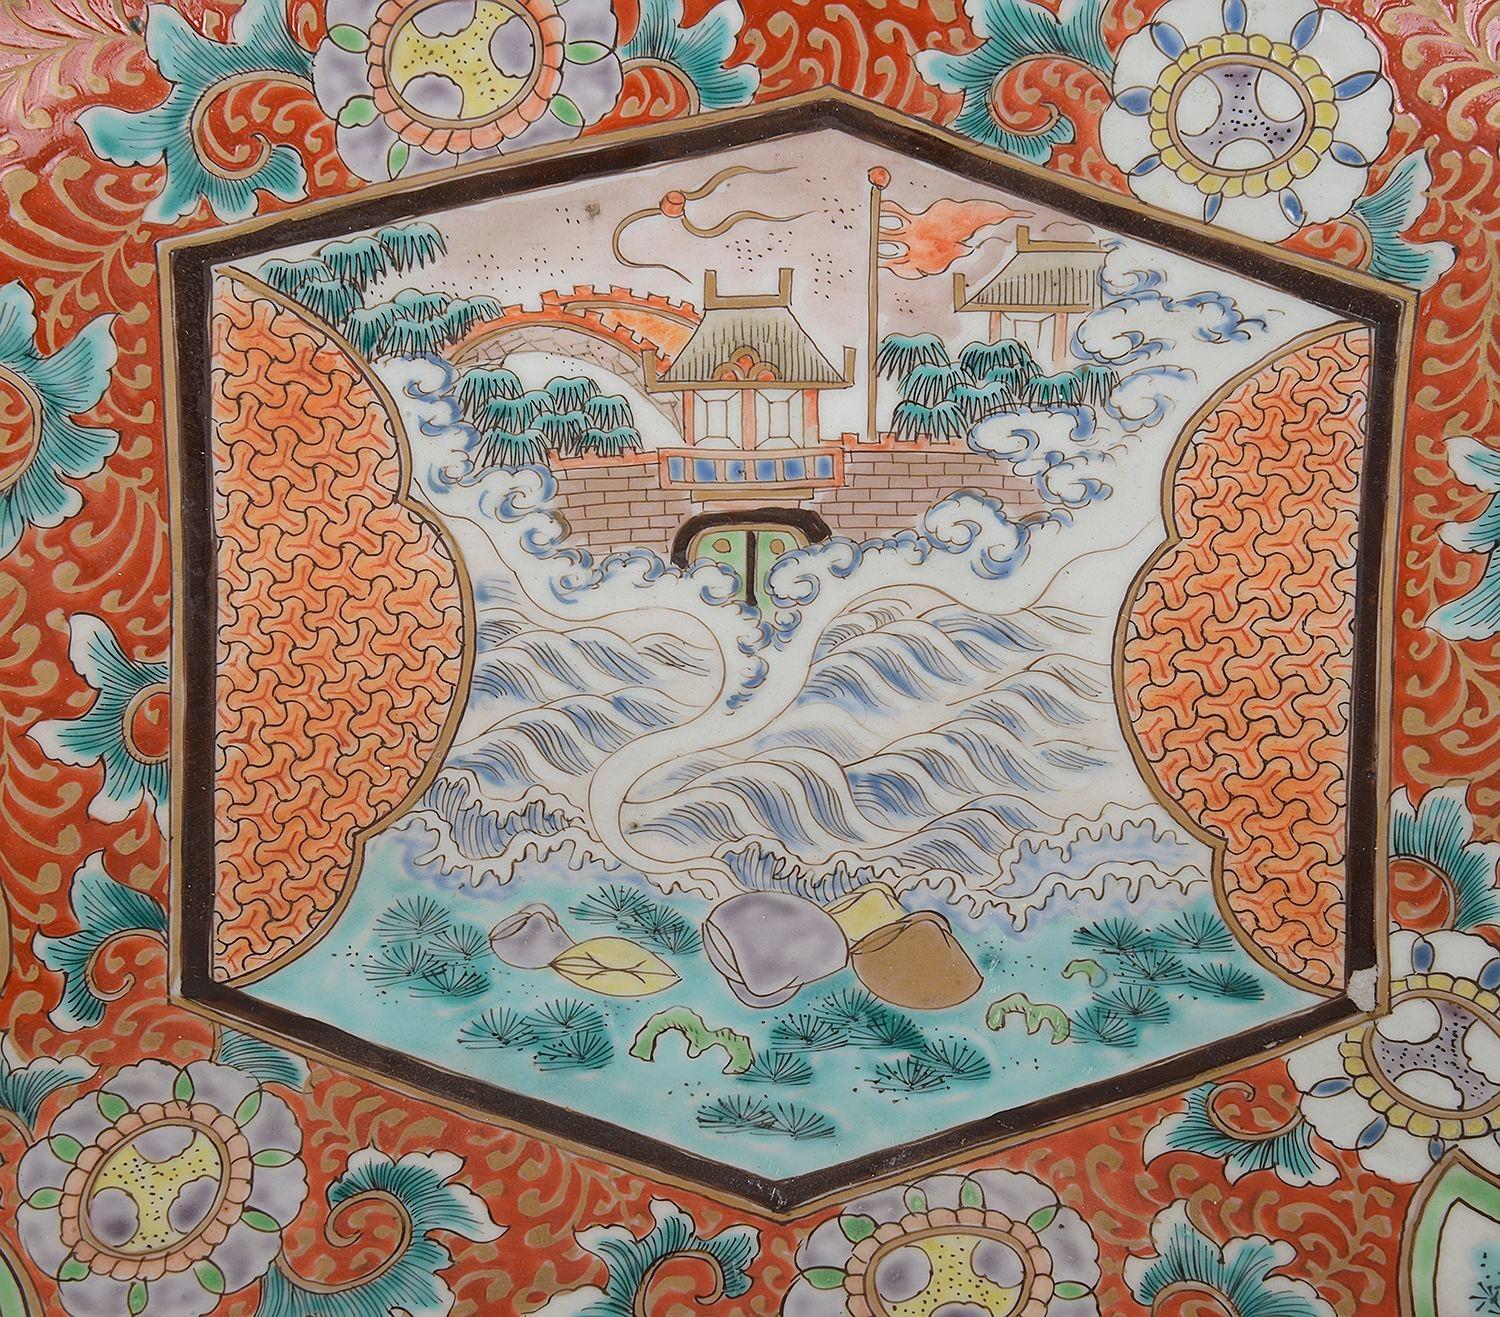 Ein großes, rundes Ladegerät aus japanischem Imari-Porzellan aus dem späten 19. Jahrhundert mit einer wunderschönen, kräftigen orangefarbenen Färbung des Grundes, mit blattartigen Verzierungen und handgemalten Paneelen, die Pagodengebäude, Wellen